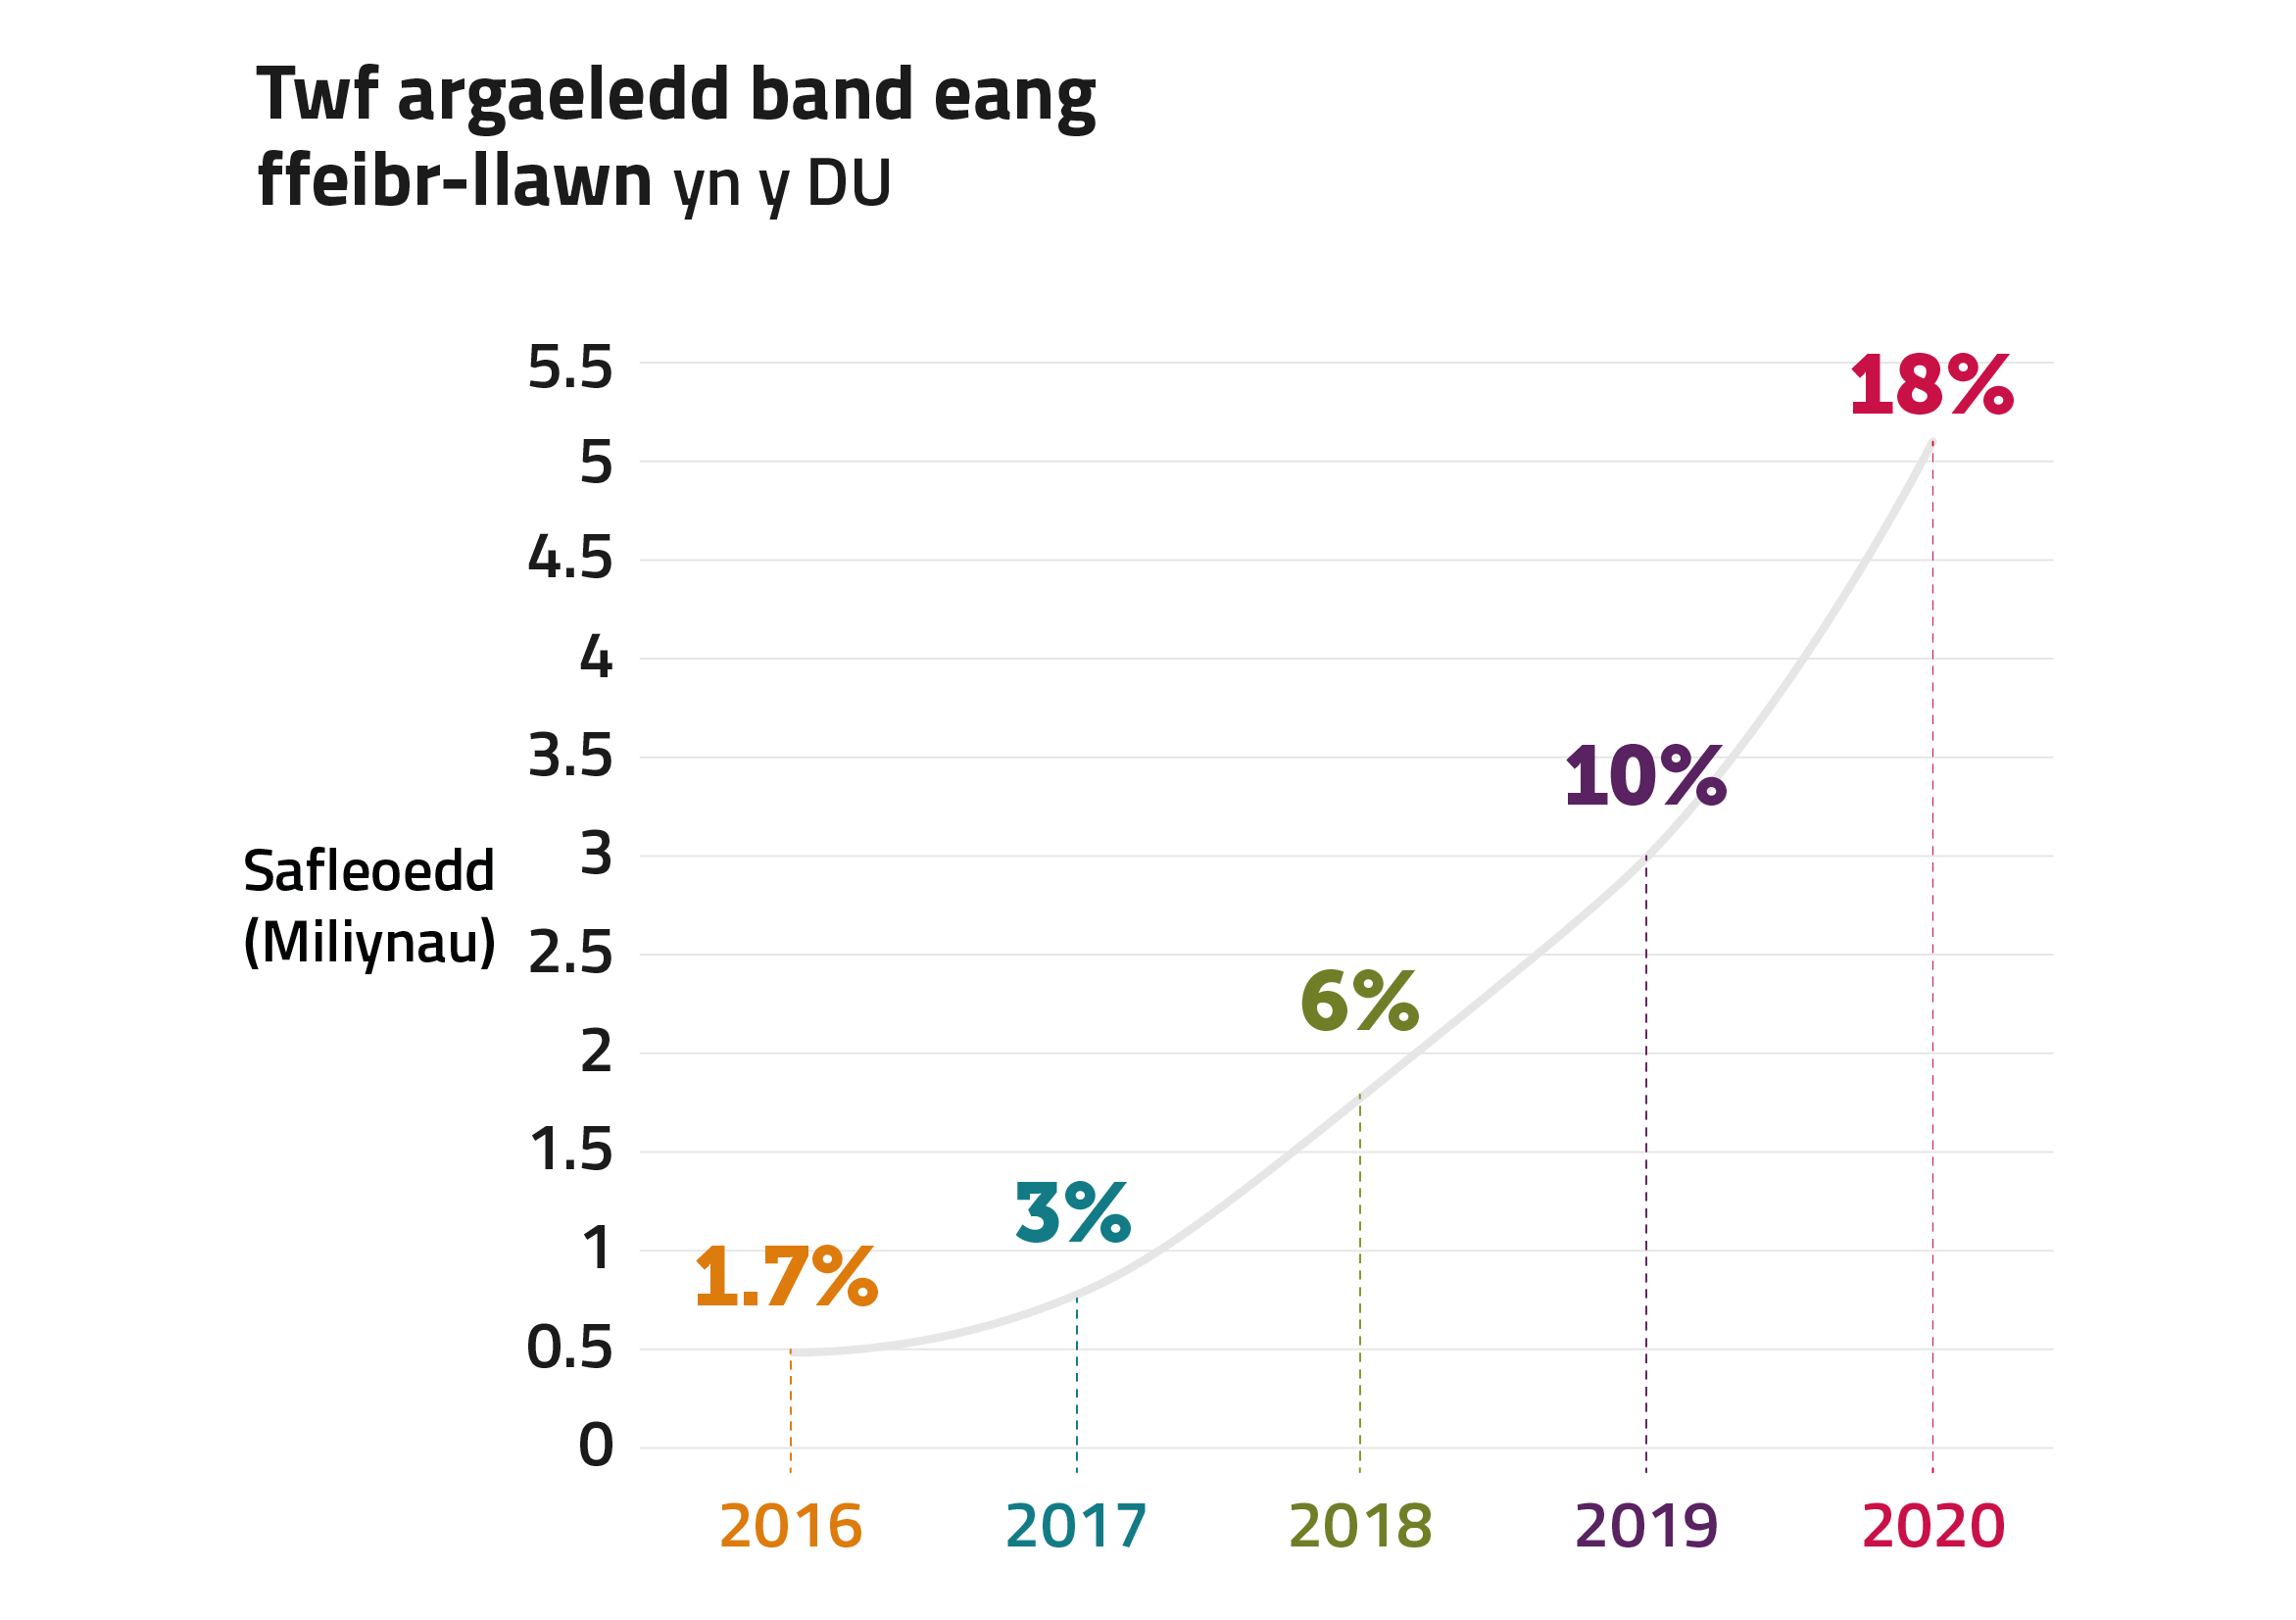 Siart sy’n dangos y tyfodd argaeledd band eang ffeibr llawn yn y DU o 1.7% yn 2016 i 18% yn 2020.